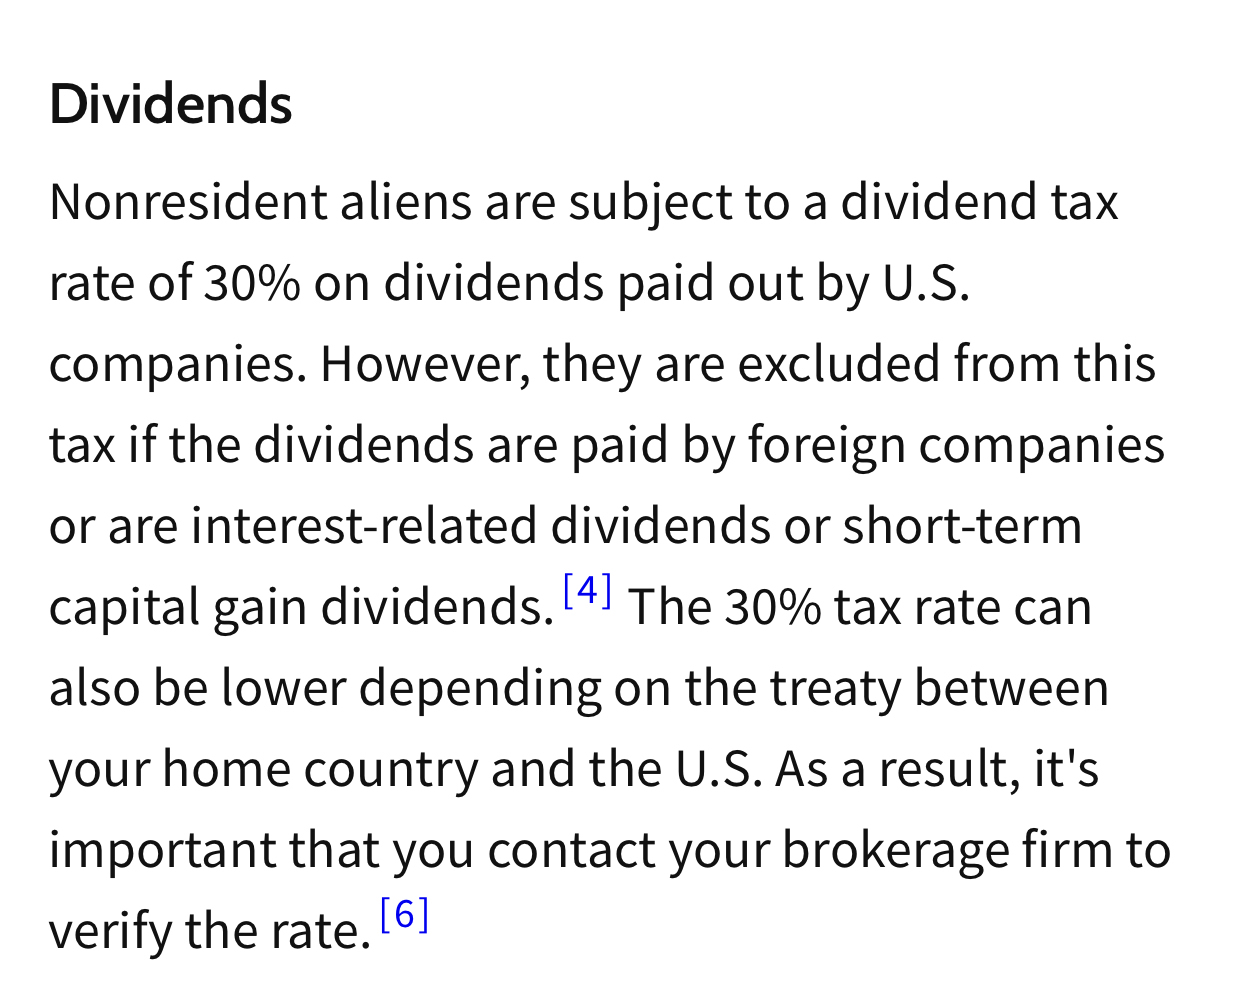 常见问题解答非美国居民股息预扣税